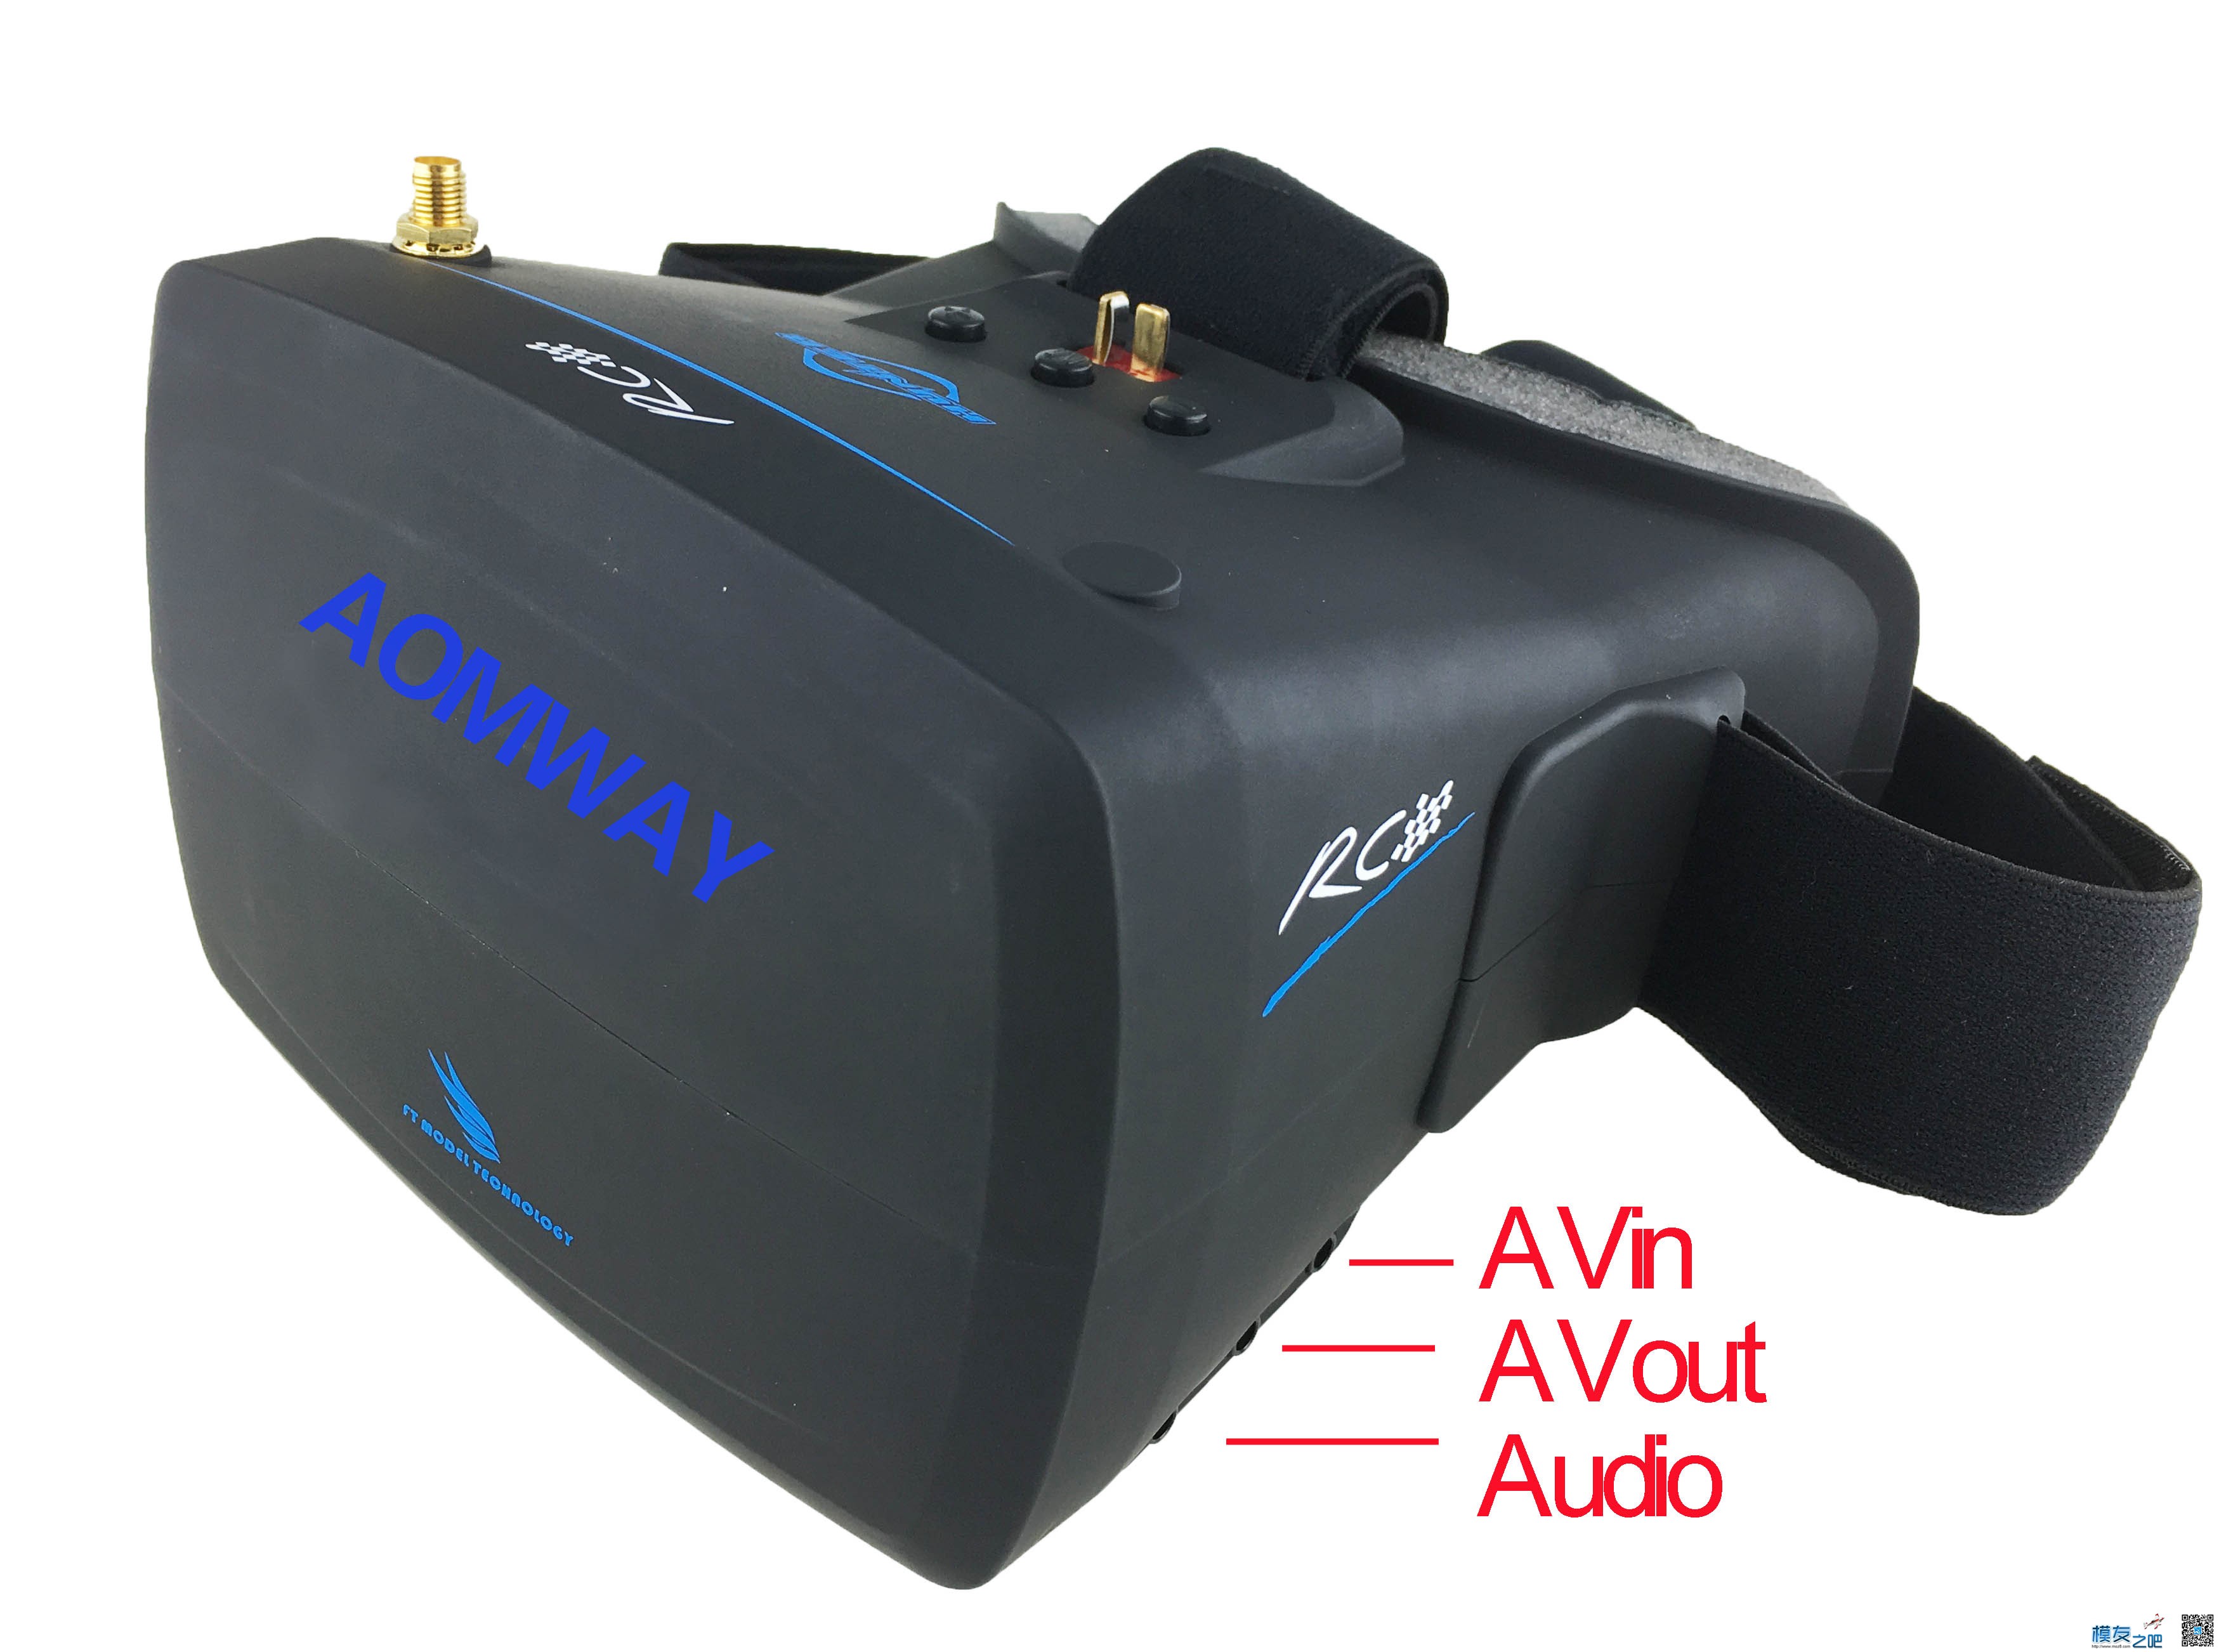 【模友之吧】AOMWAY VR Goggles V1 视频眼镜测试团购活动！ 电池,天线,图传,接收机,论坛活动 作者:飞天狼 372 